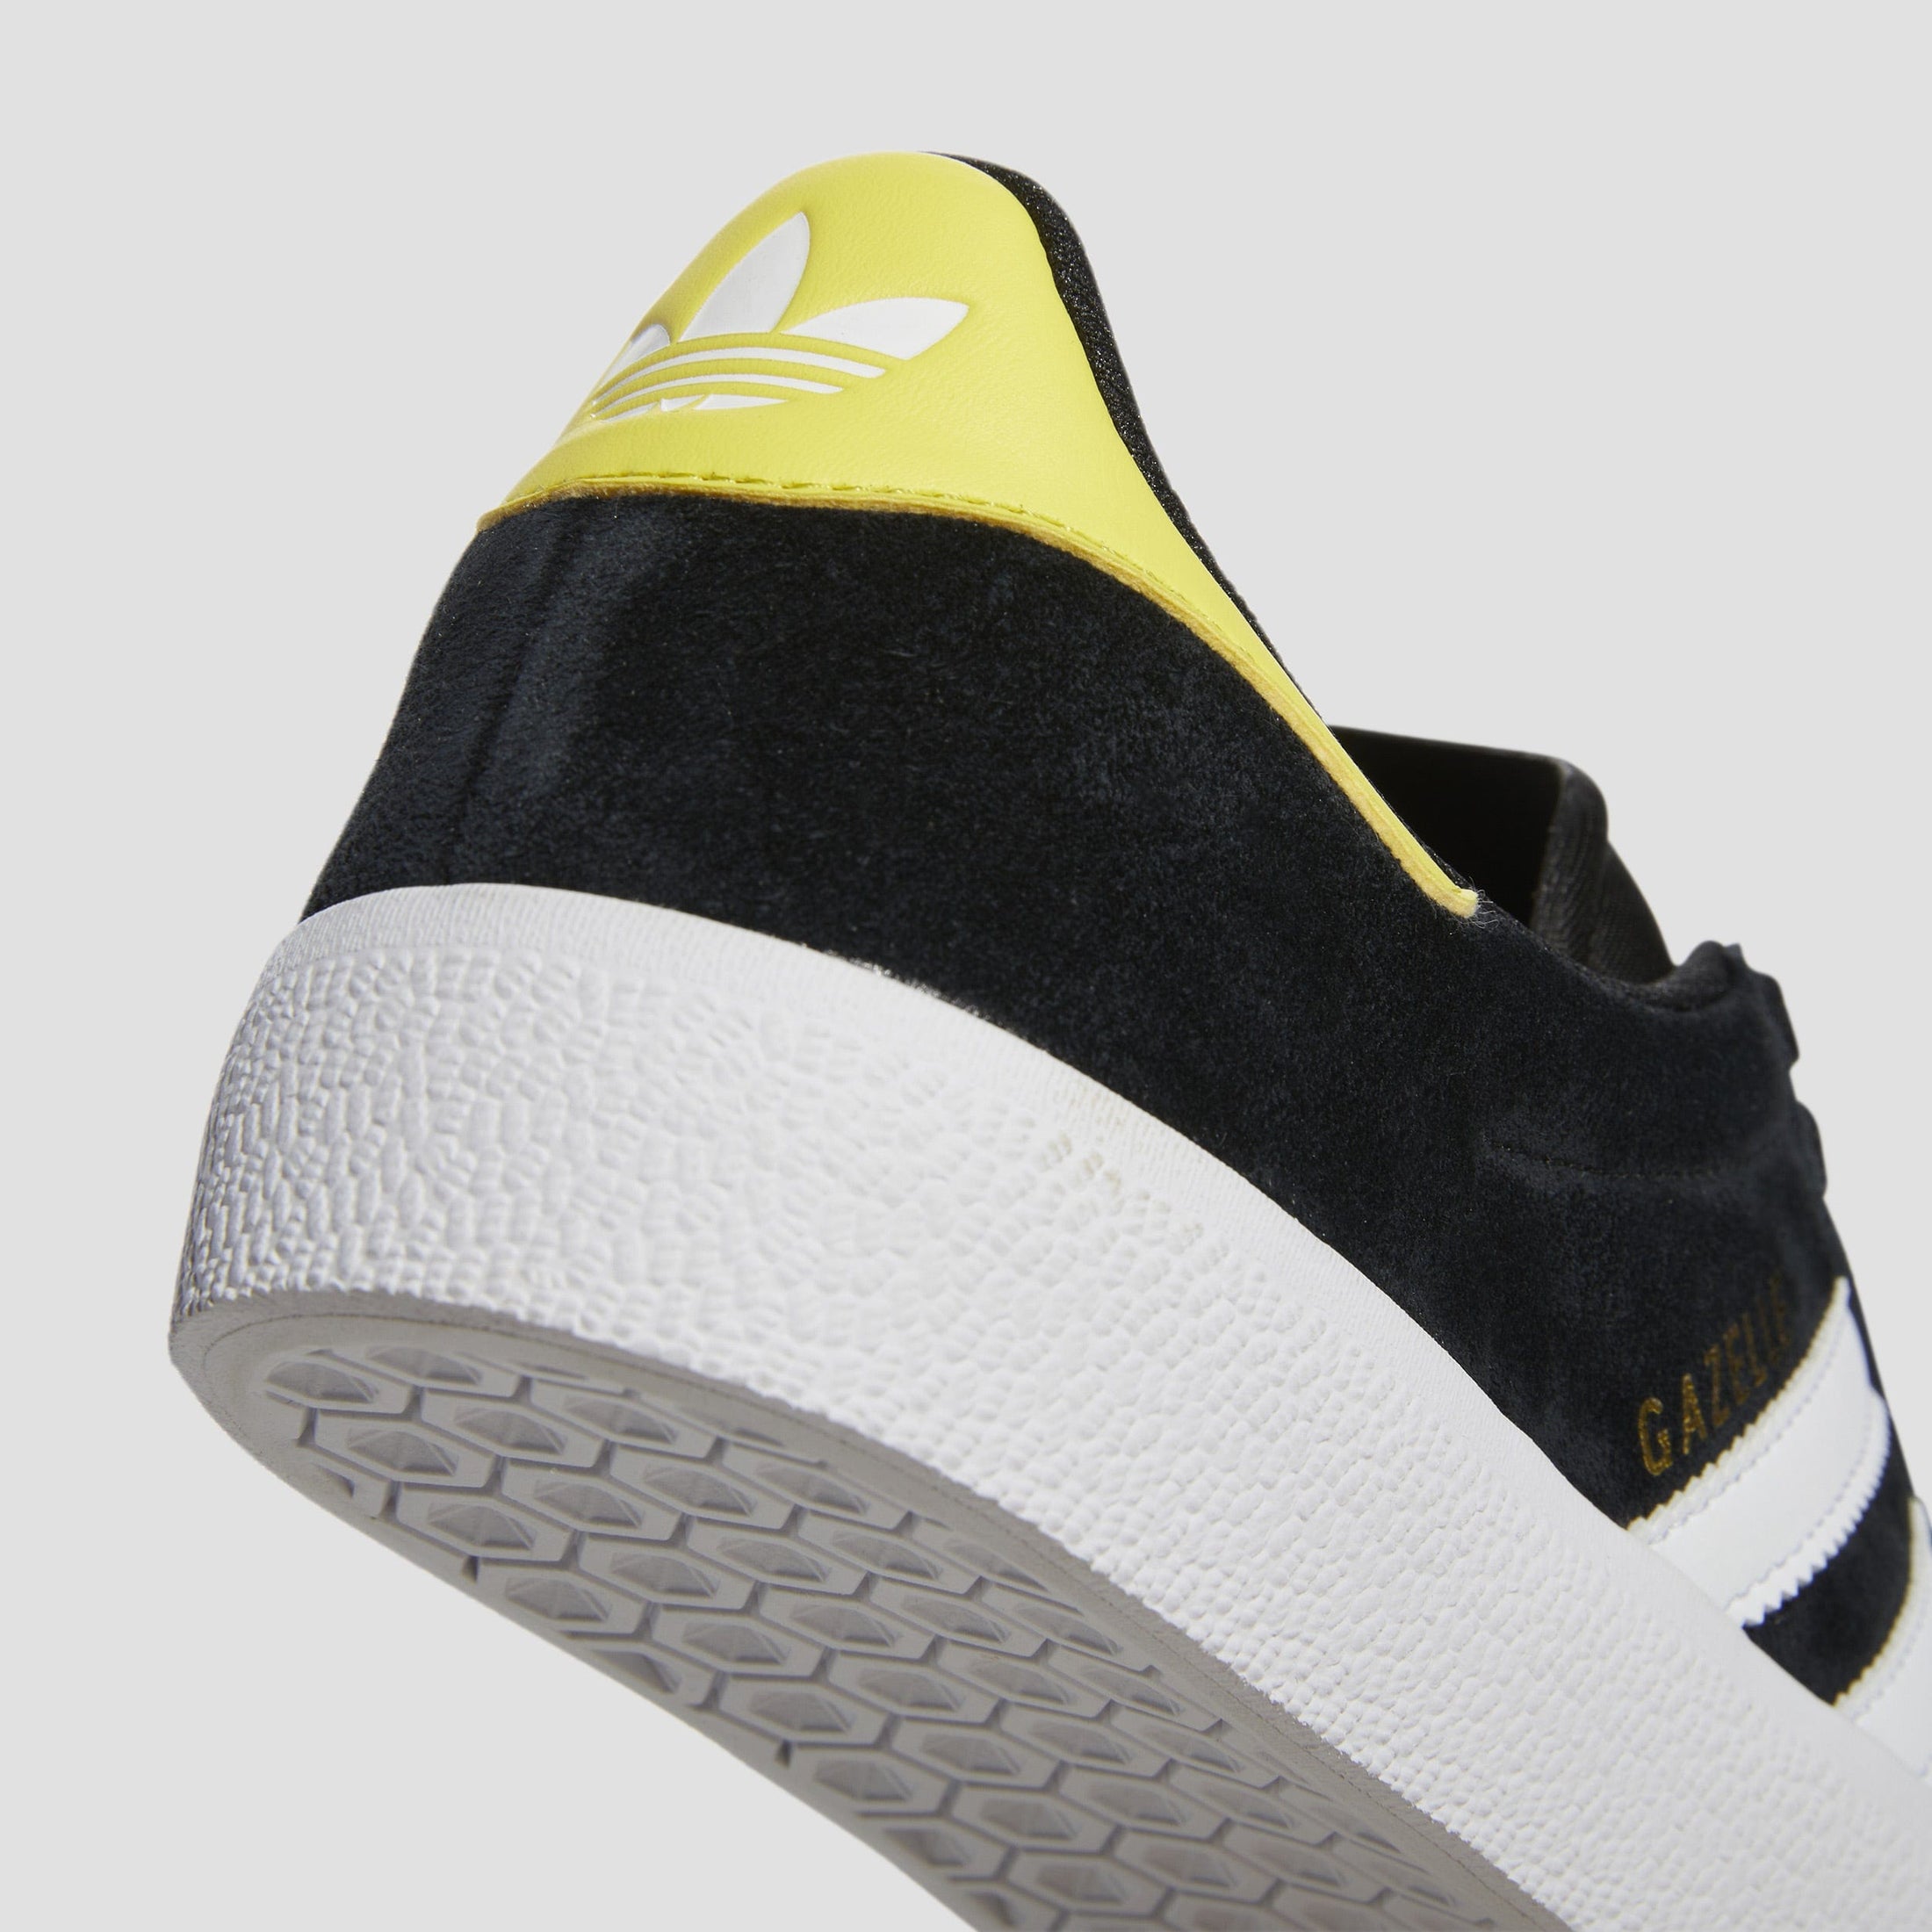 adidas Gazelle ADV Skate Shoes Core Black / Footwear White / Core Black